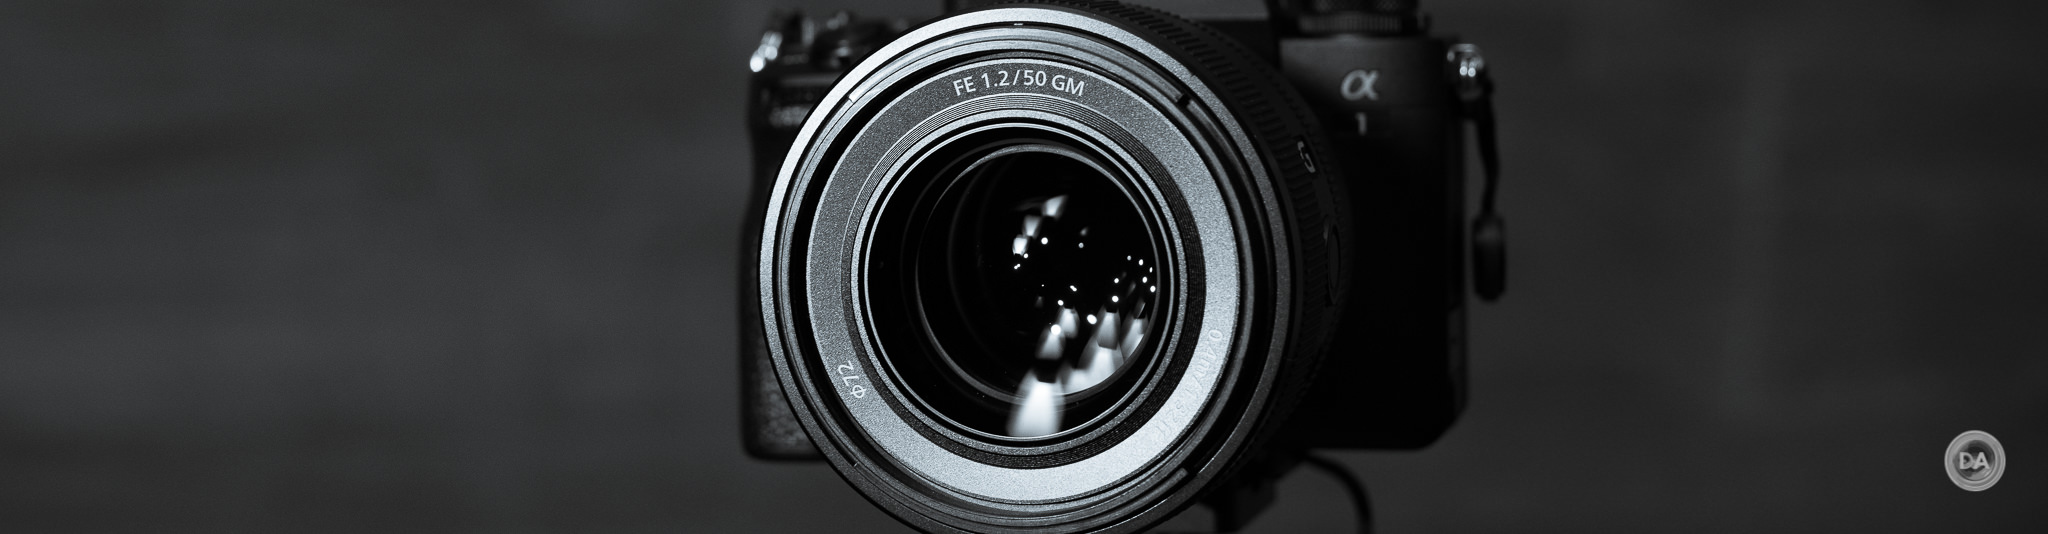 カメラ レンズ(単焦点) Sony FE 50mm F1.2 G Master Review - DustinAbbott.net